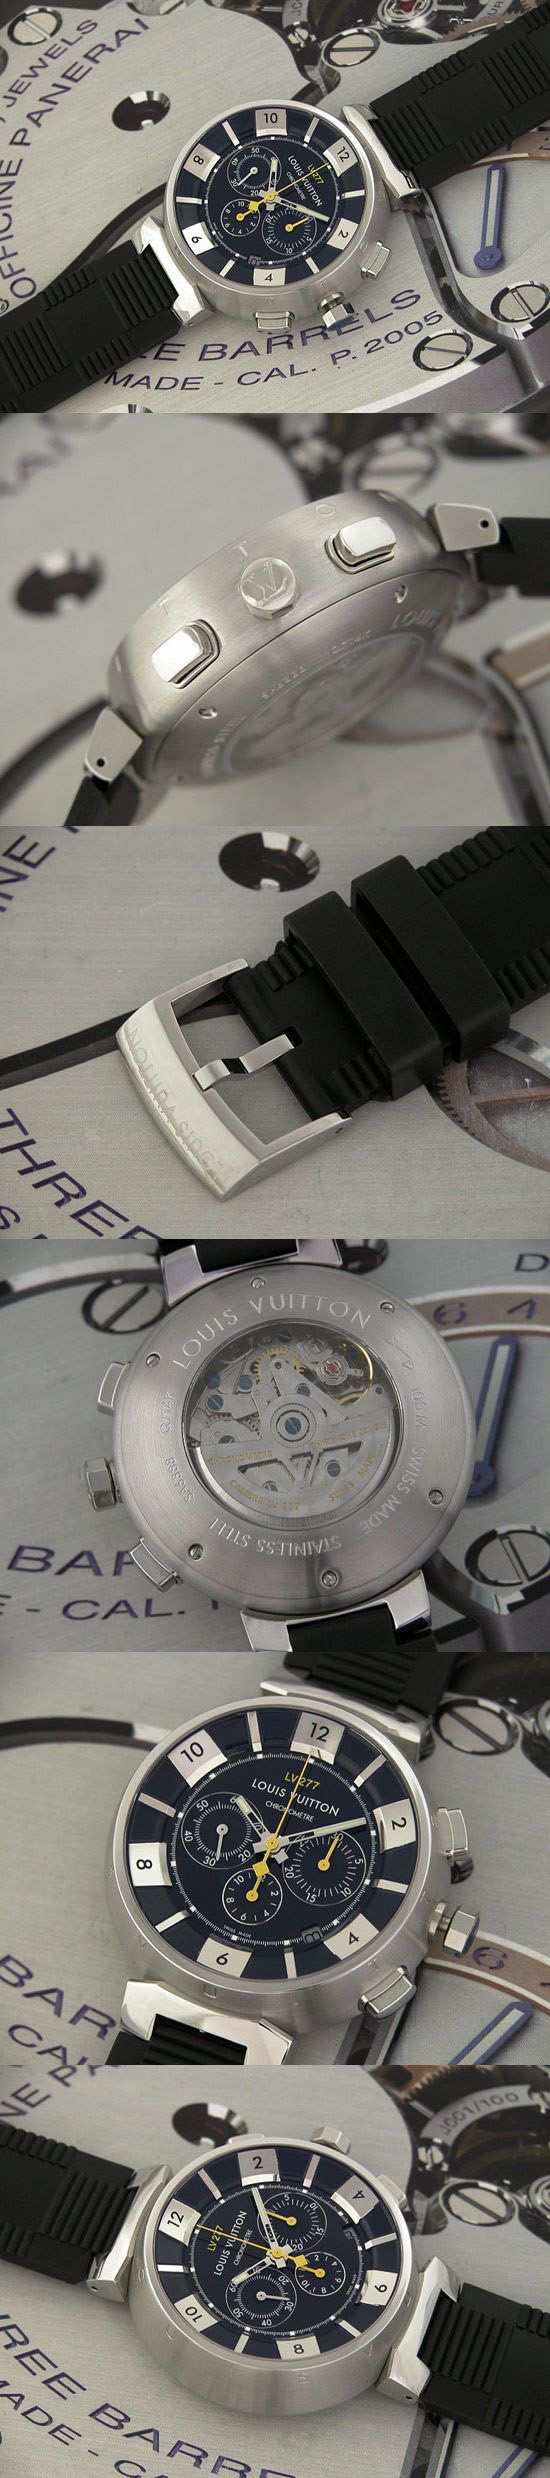 おしゃれなブランド時計がルイヴィトン-タンブール-LOUIS VUITTON-LV277-Q114K0-男性用を提供します.